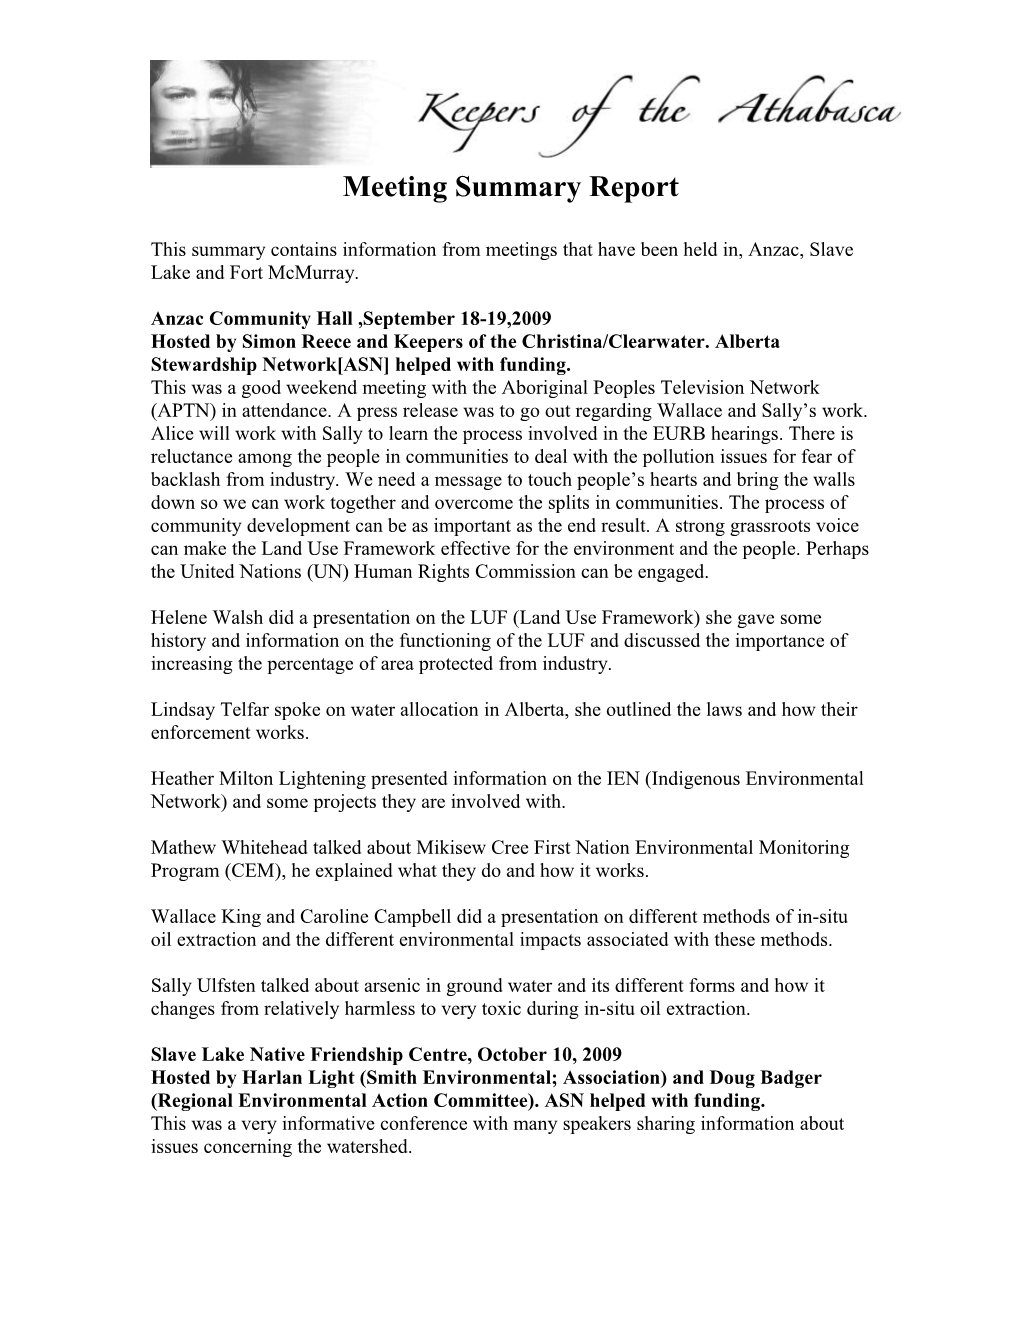 Meeting Summary Report